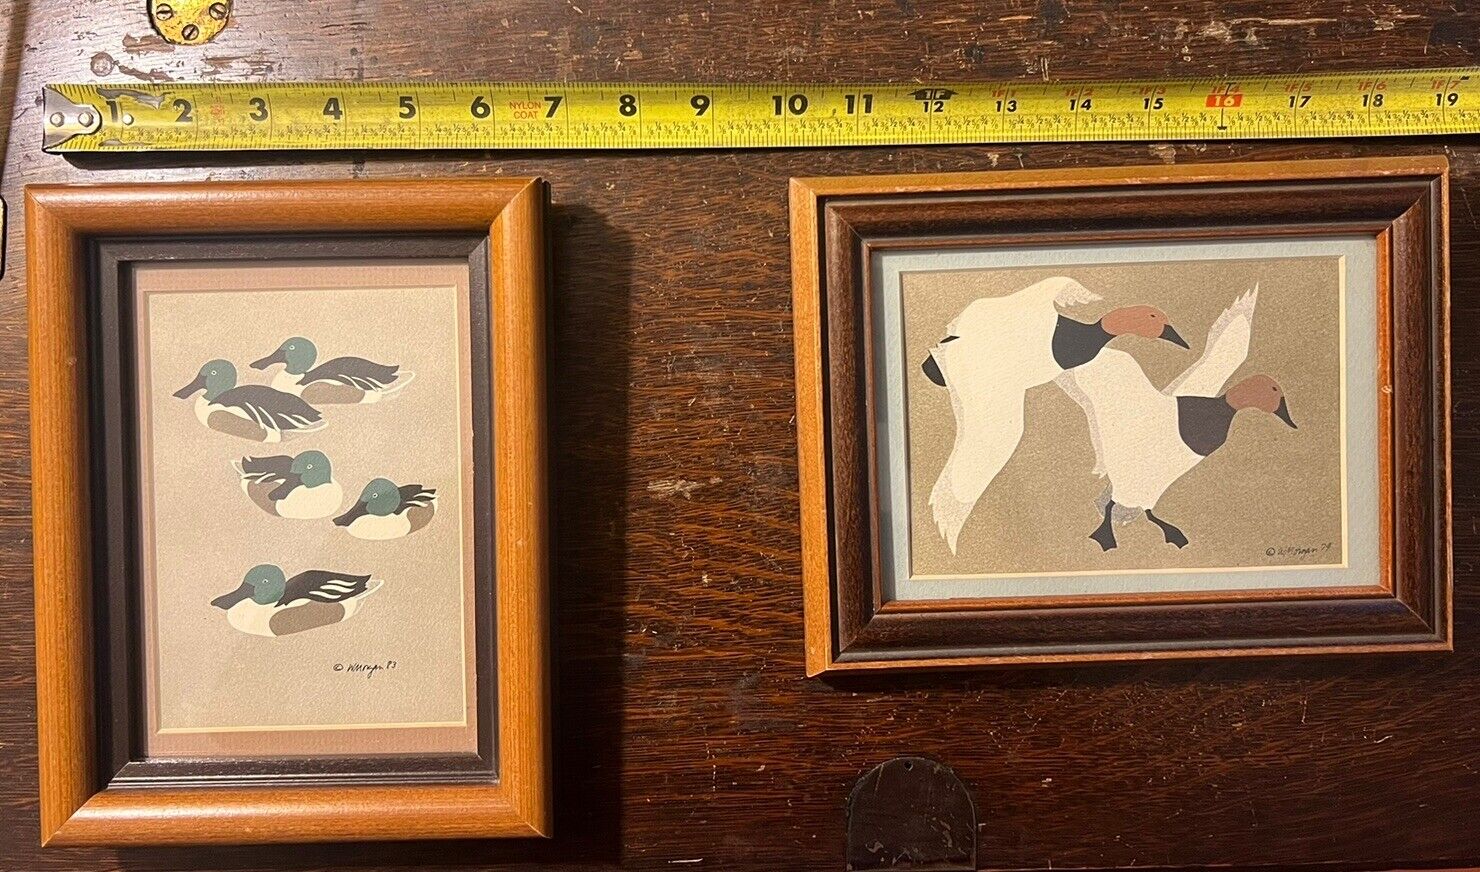 Signed W. MORGAN 1979/1983 PRINT Ducks / Waterfowl 7” X 9” Beautiful Wood Frames